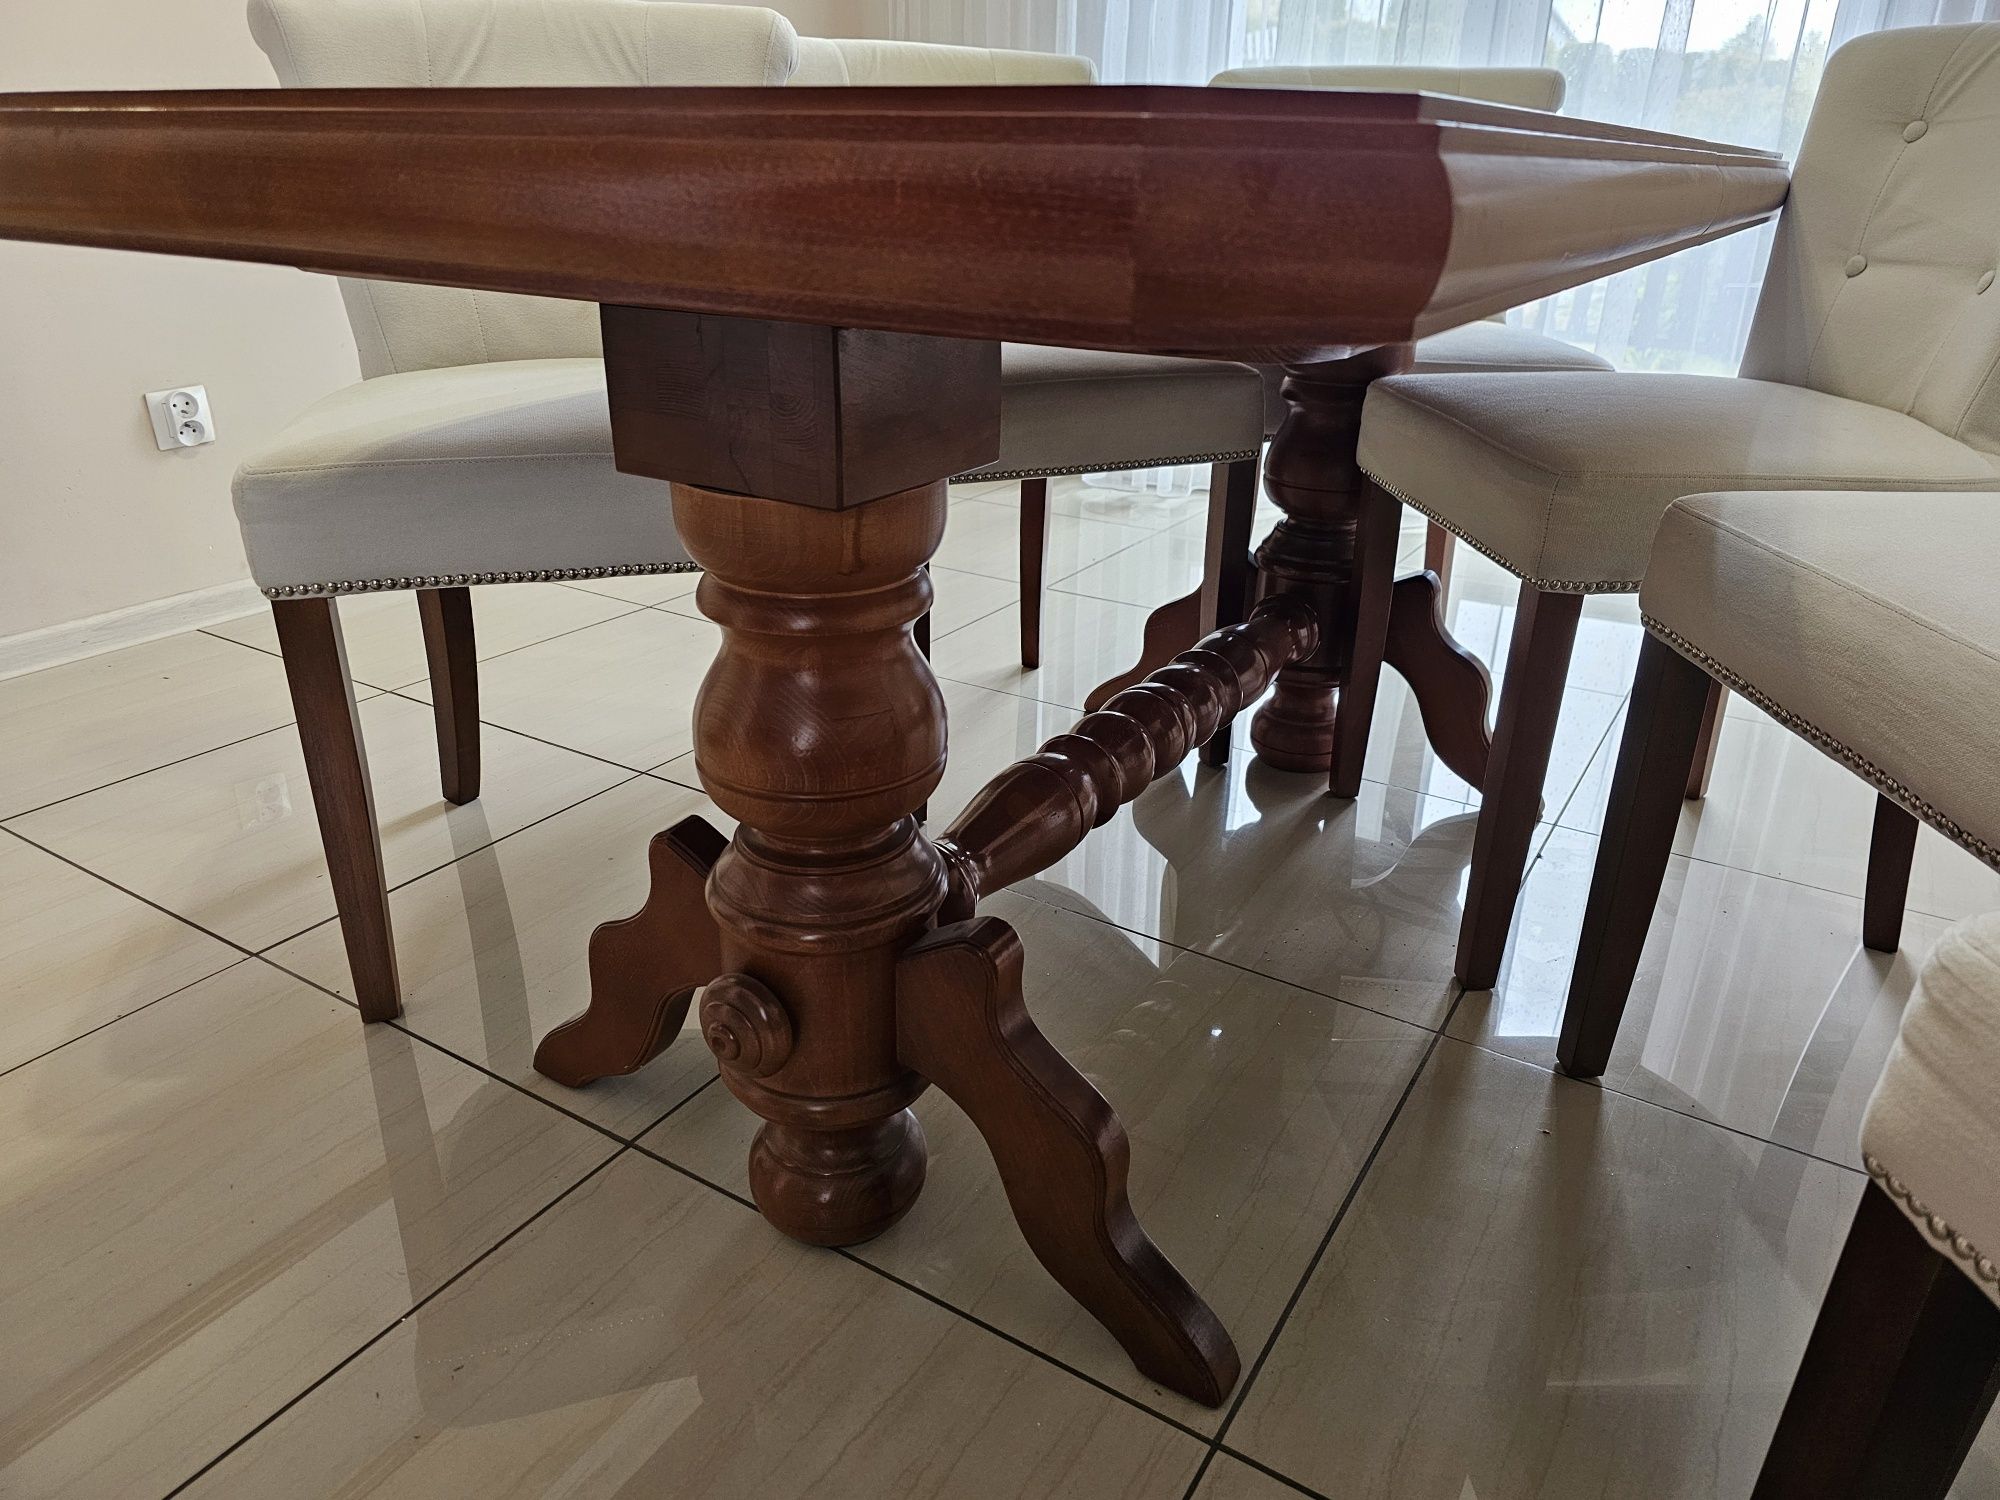 Stół drewniany, krzesła tapicerowane